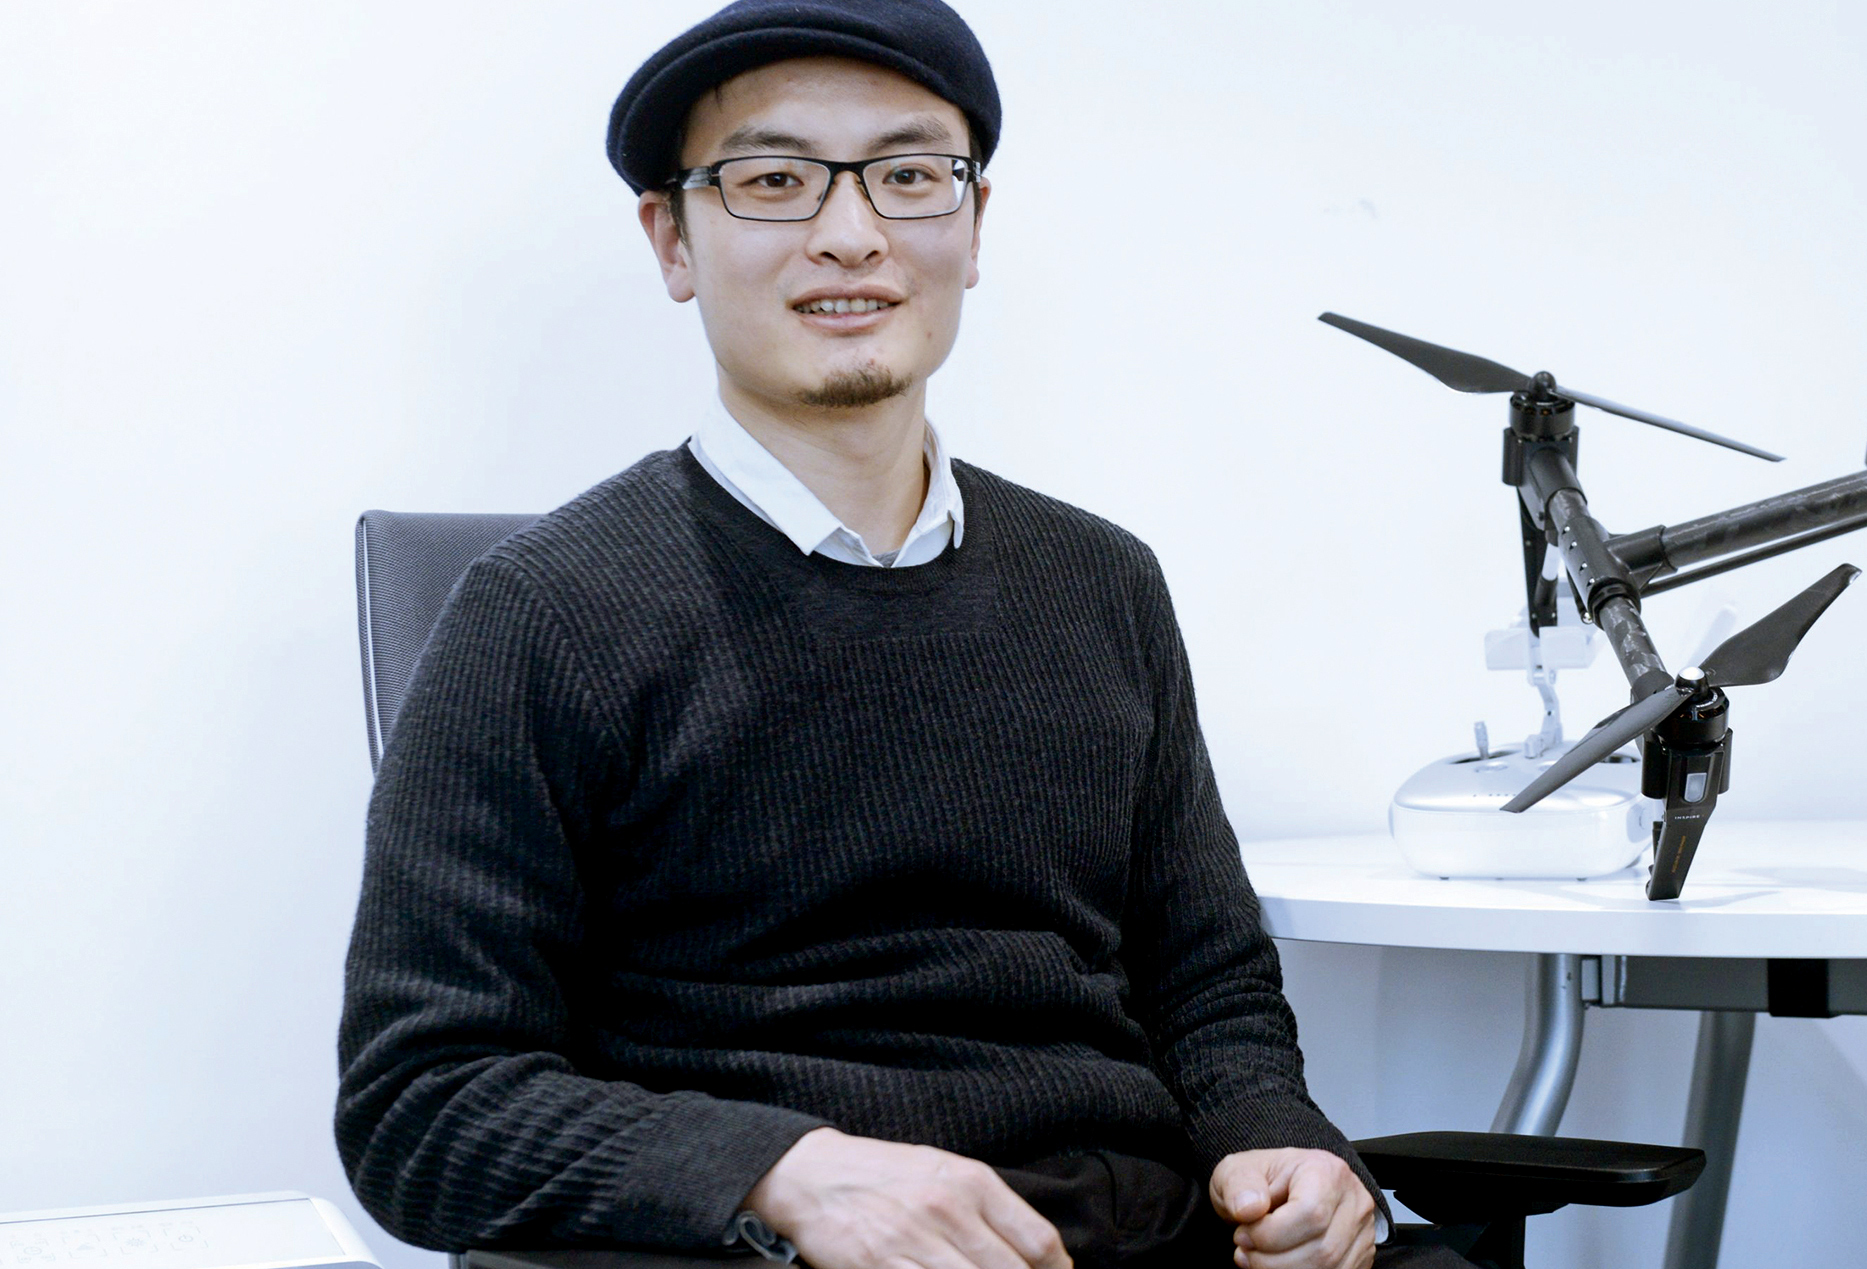 Cine este Tao Wang, cel care la 40 de ani a ajuns cel mai mare producător de drone comerciale din lume. El a dezvoltat primele prototipuri în camera de cămin